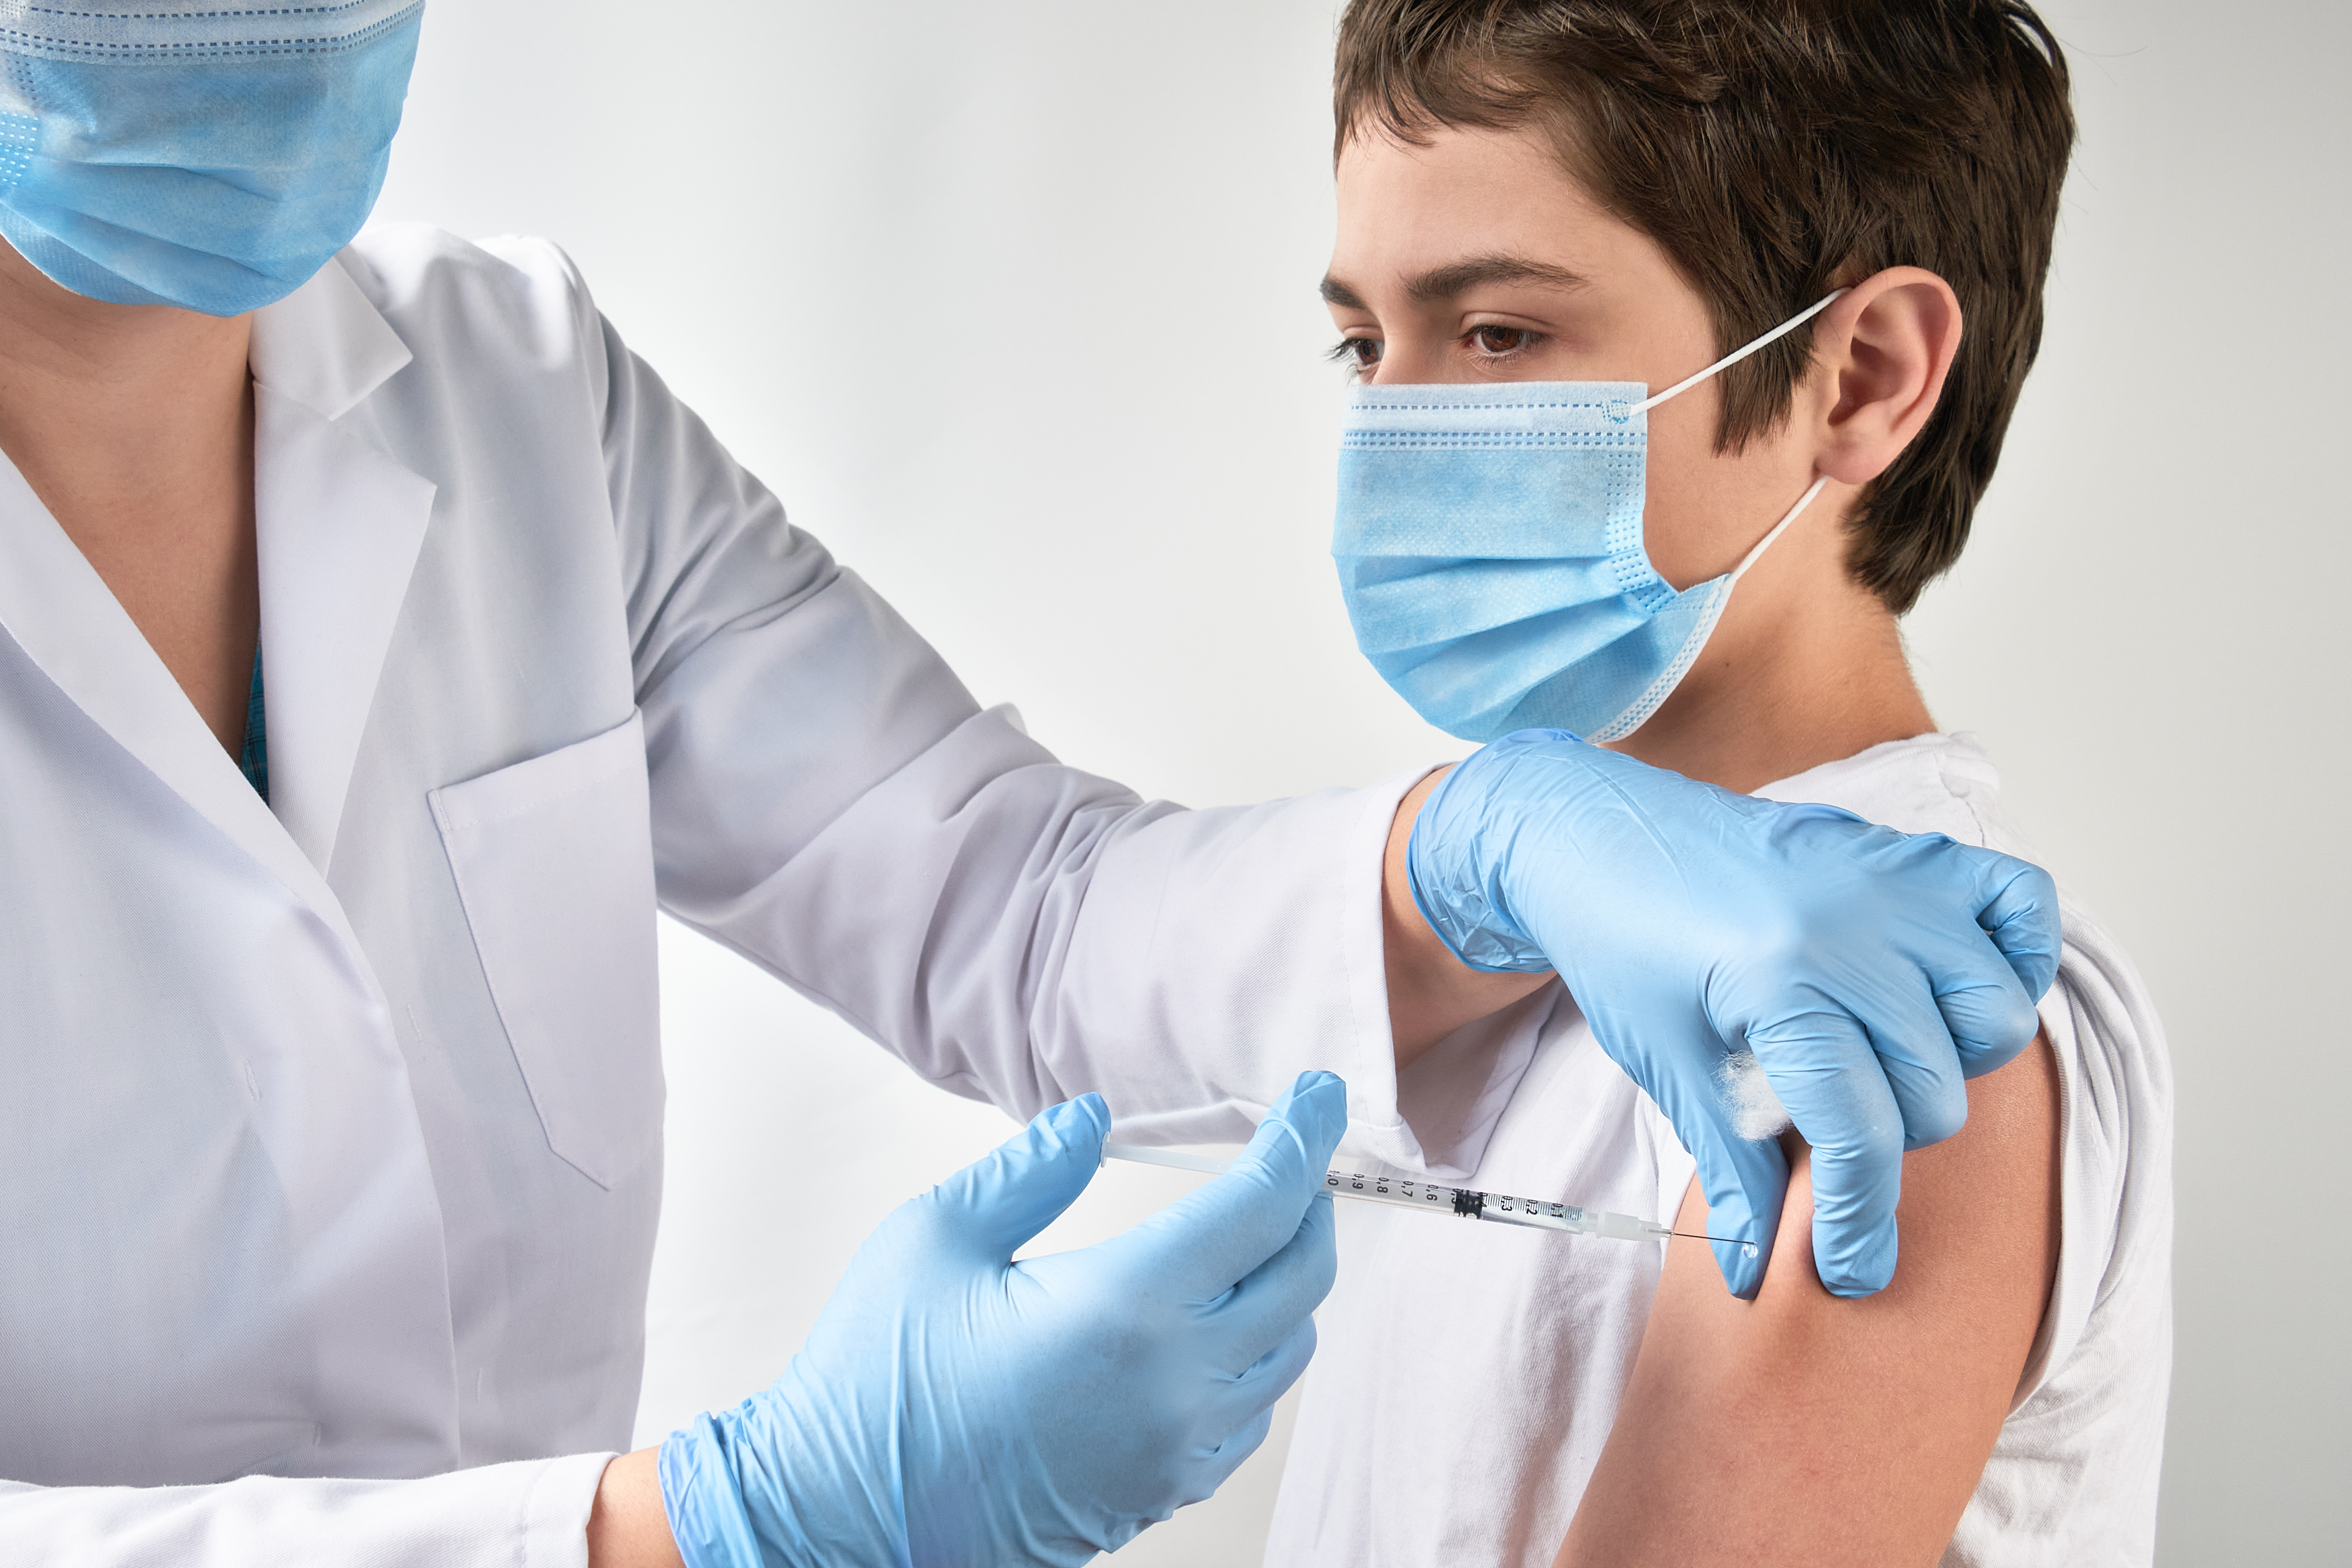 A teen gets a vaccine shot